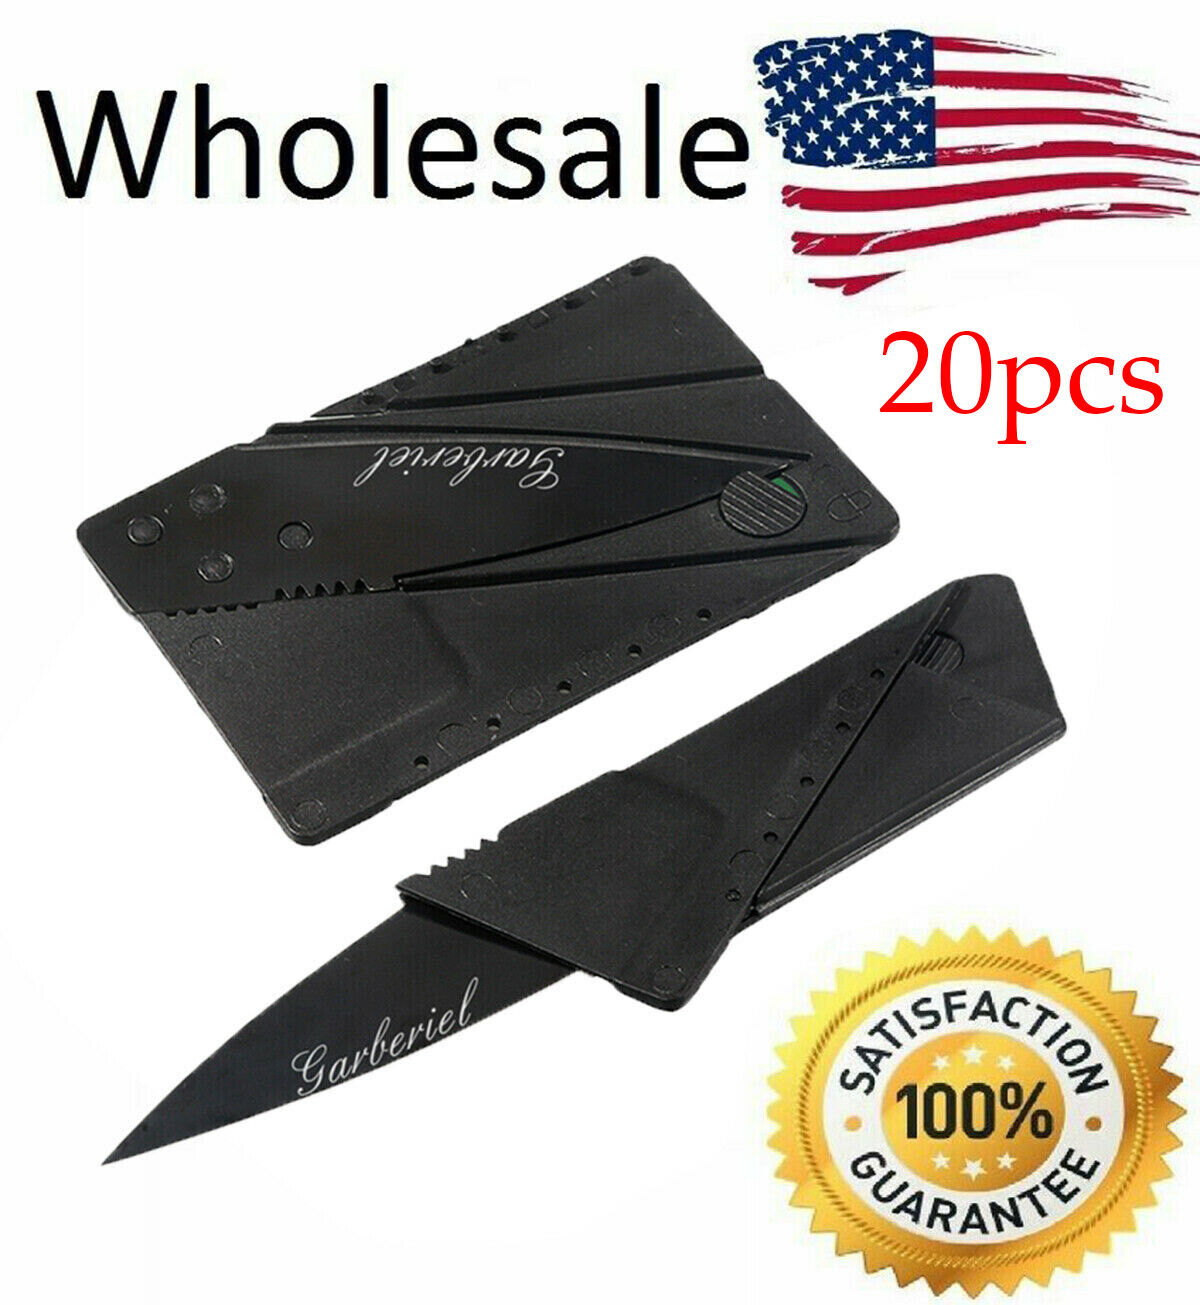 20 PACK Credit Card Folding Knife Black Wallet Sharp Thin Knives Hunting Camping